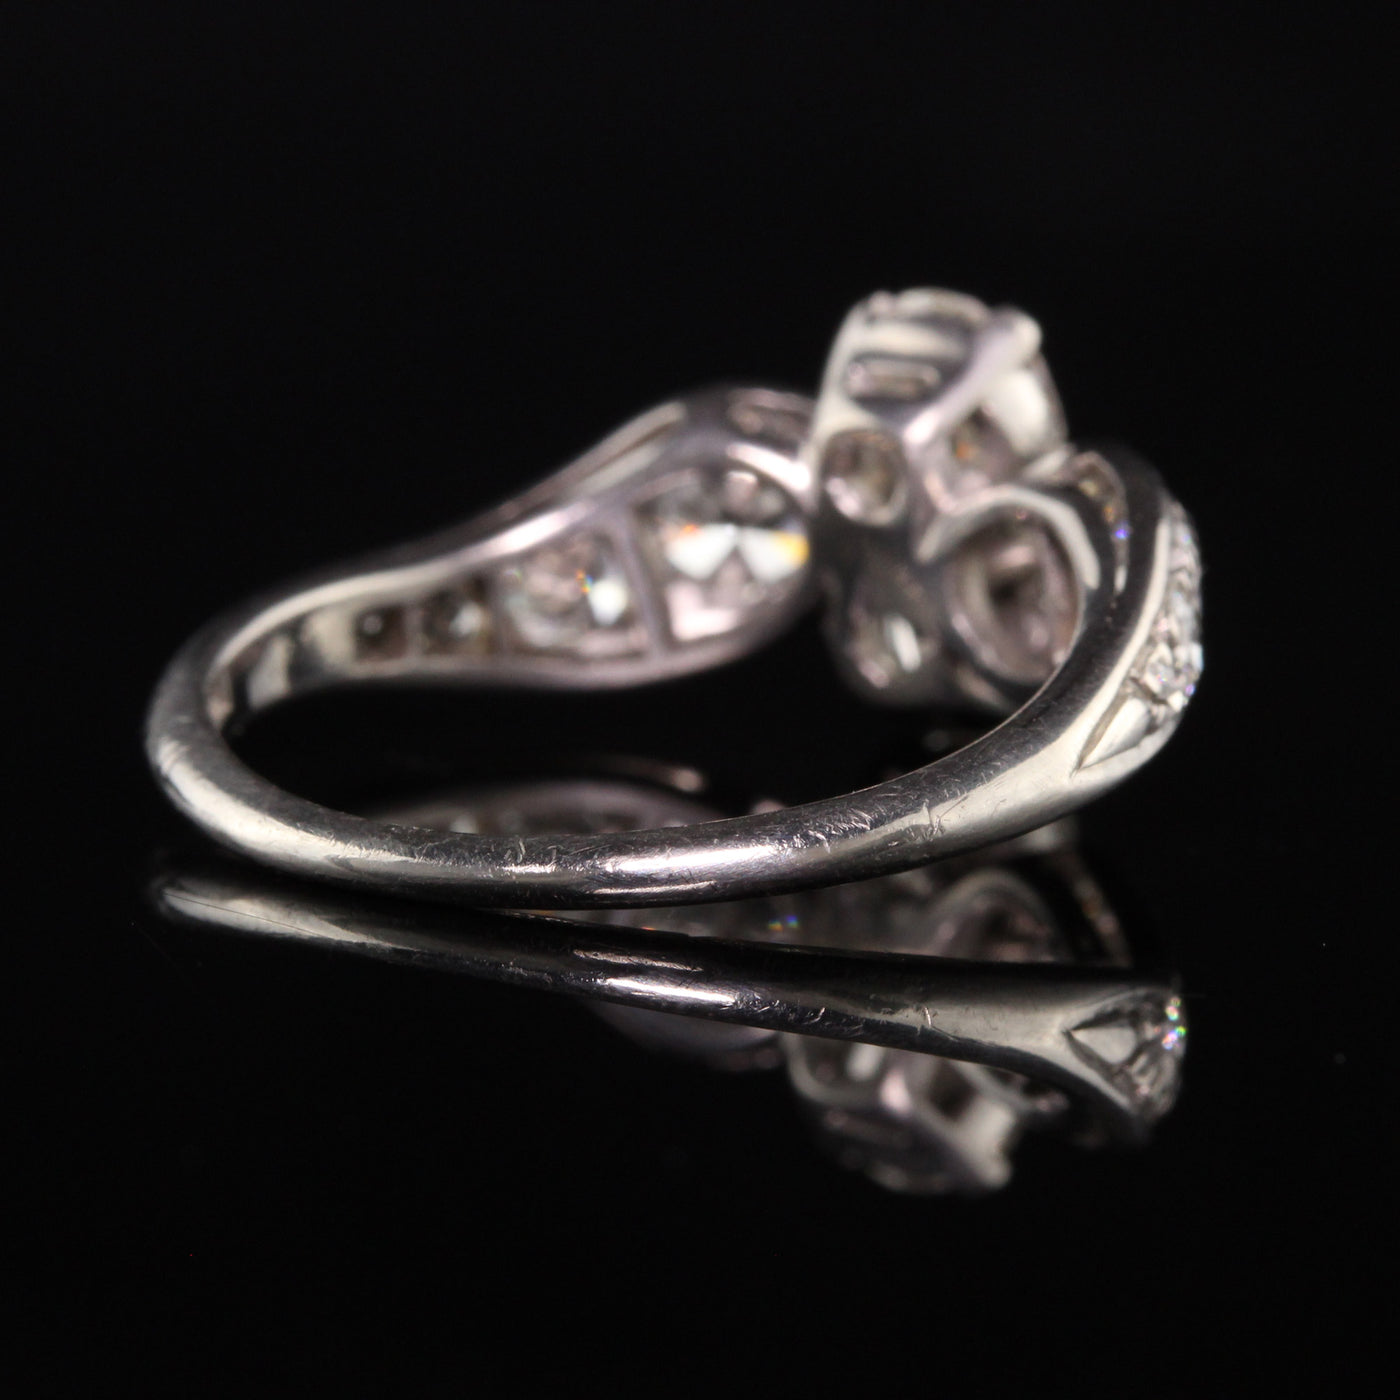 Antique Art Deco Platinum Old European Diamond Statement Engagement Ring